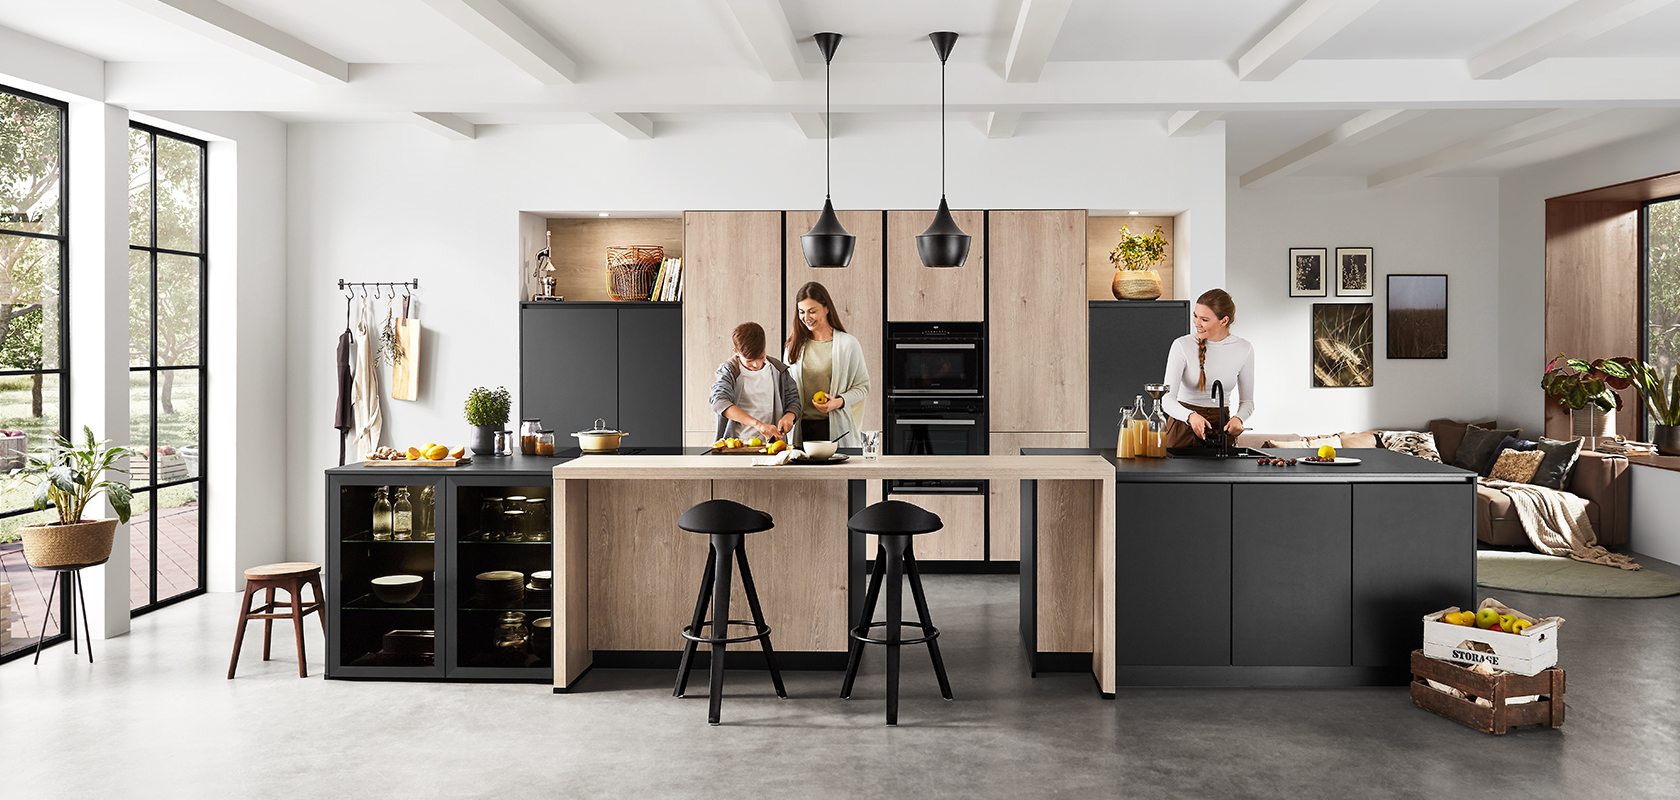 Moderne Kücheninnenarchitektur mit geräumigem, sauberem Design, in dem zwei Personen kochen und plaudern, wobei Funktionalität und zeitgenössischer Stil im Vordergrund stehen.